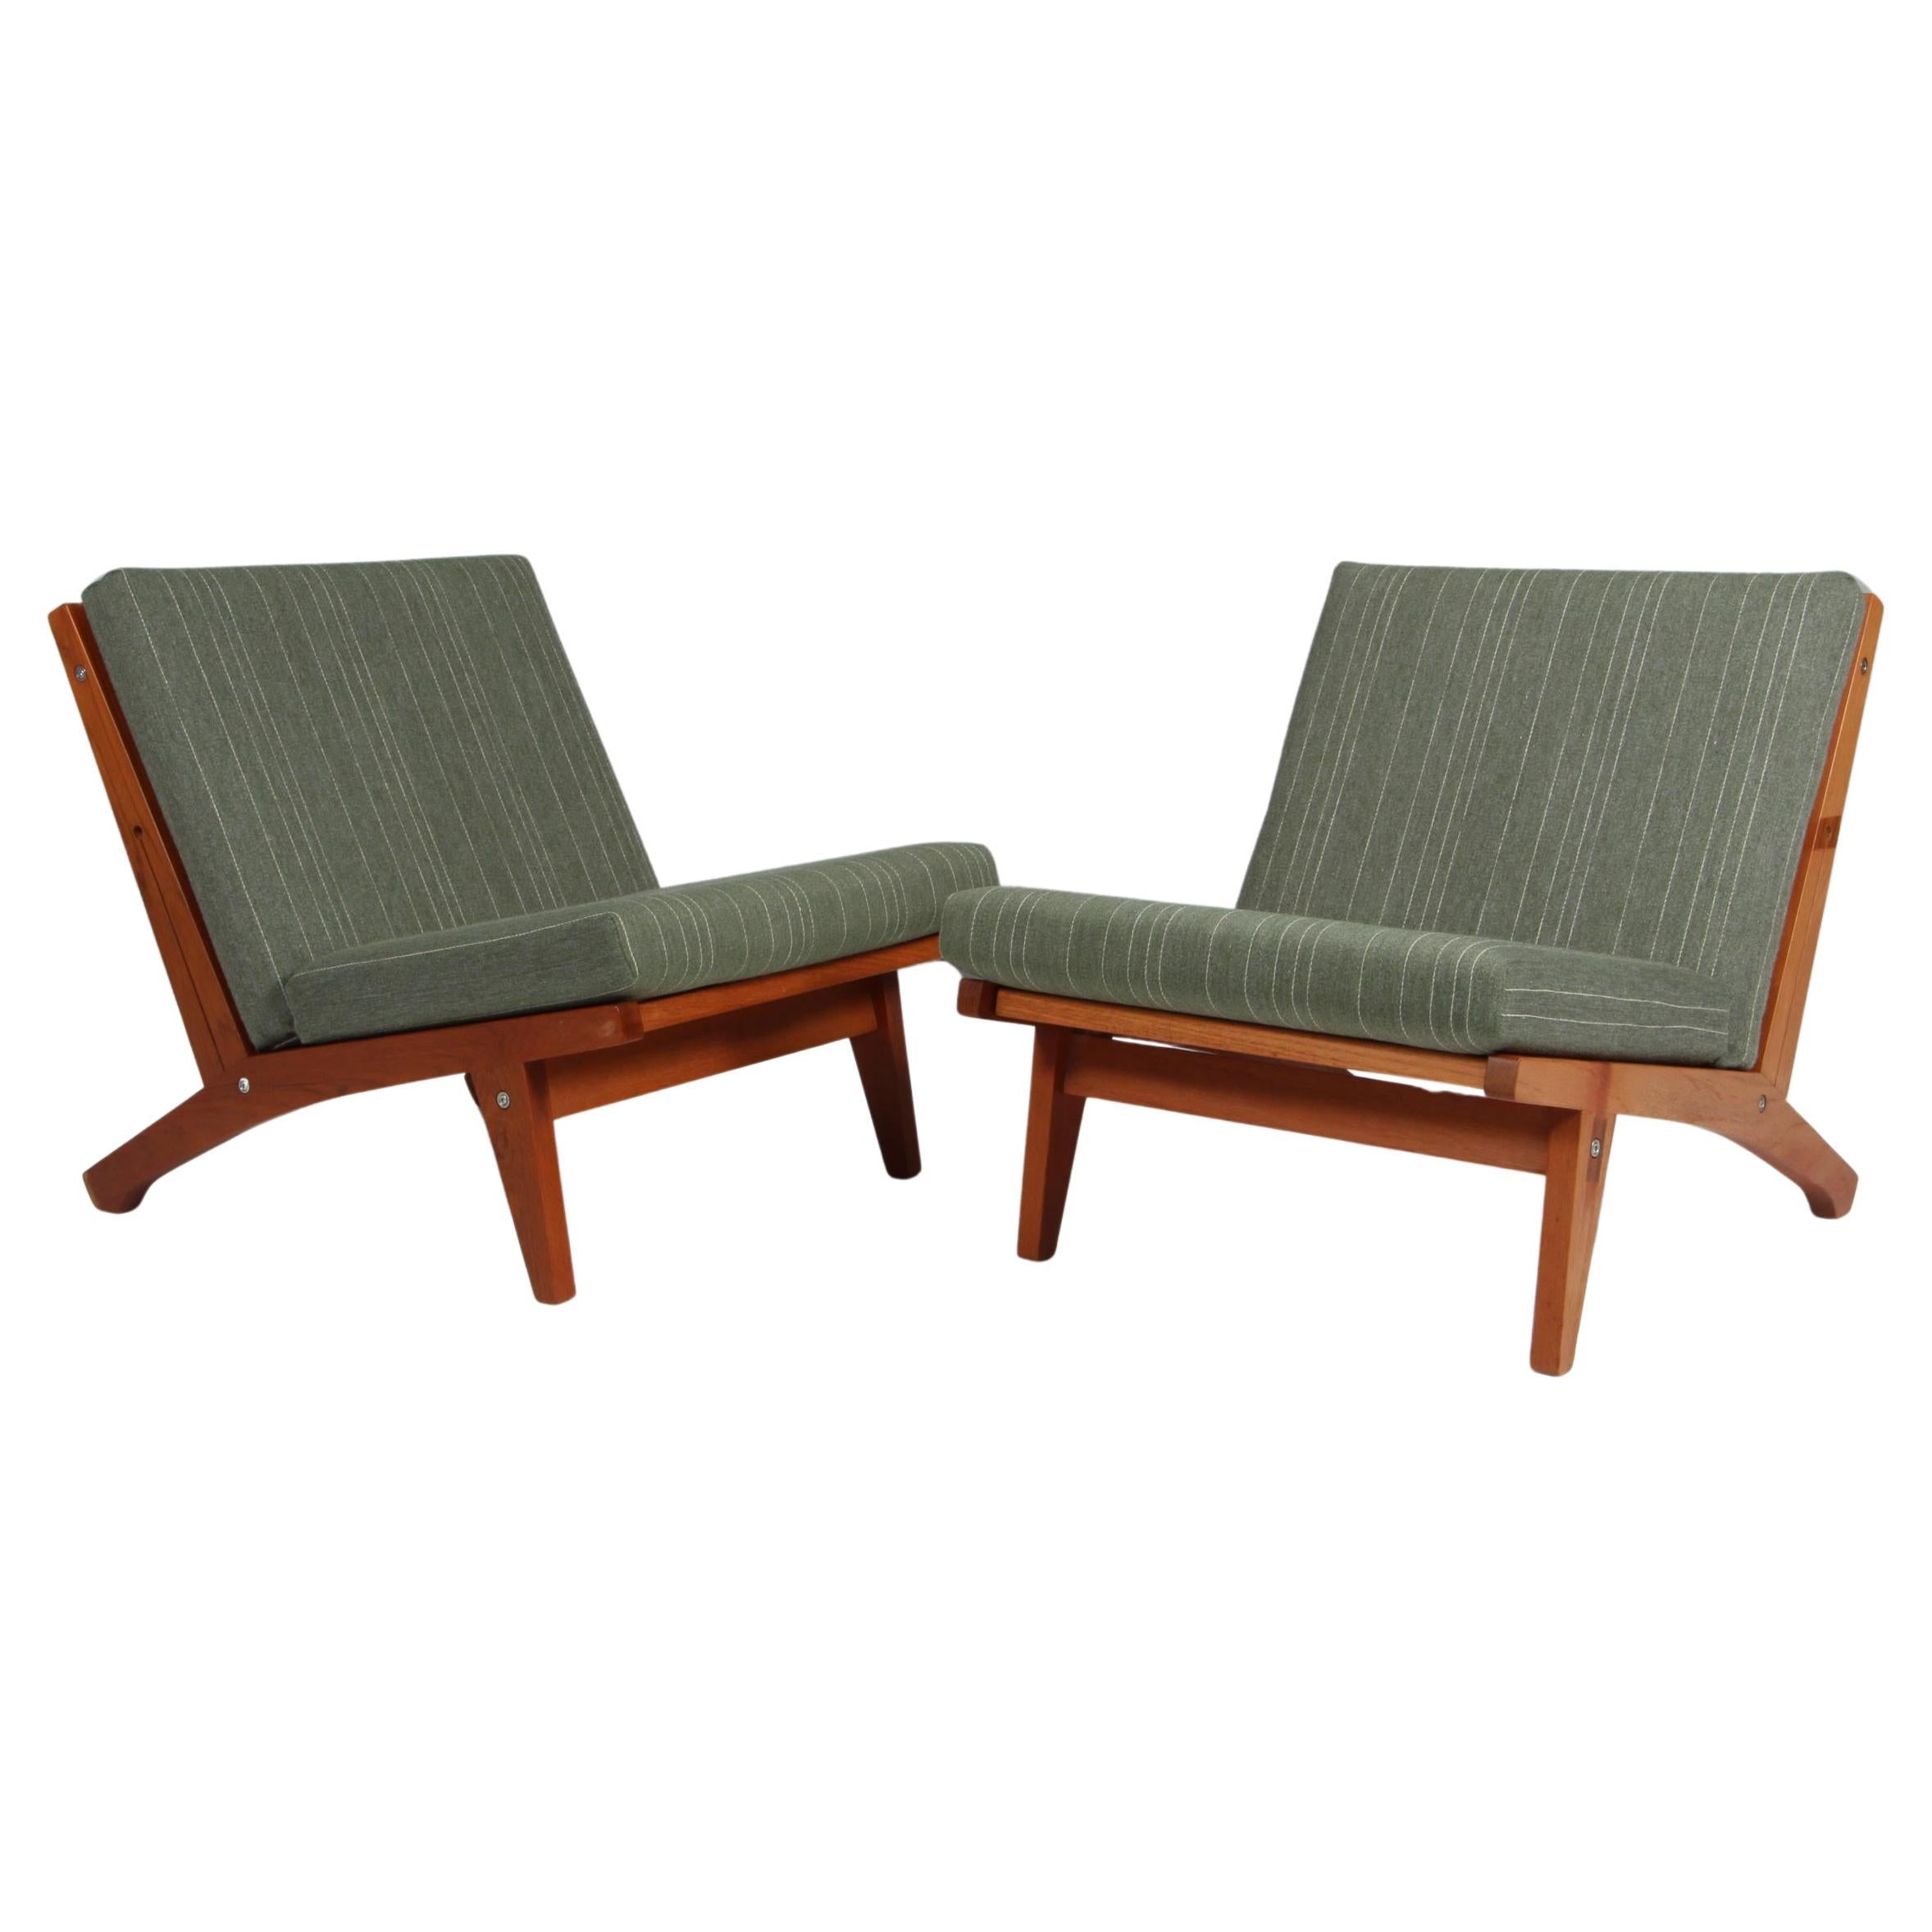 Hans J. Wegner Lounge Chairs, Model GE-370, teak For Sale